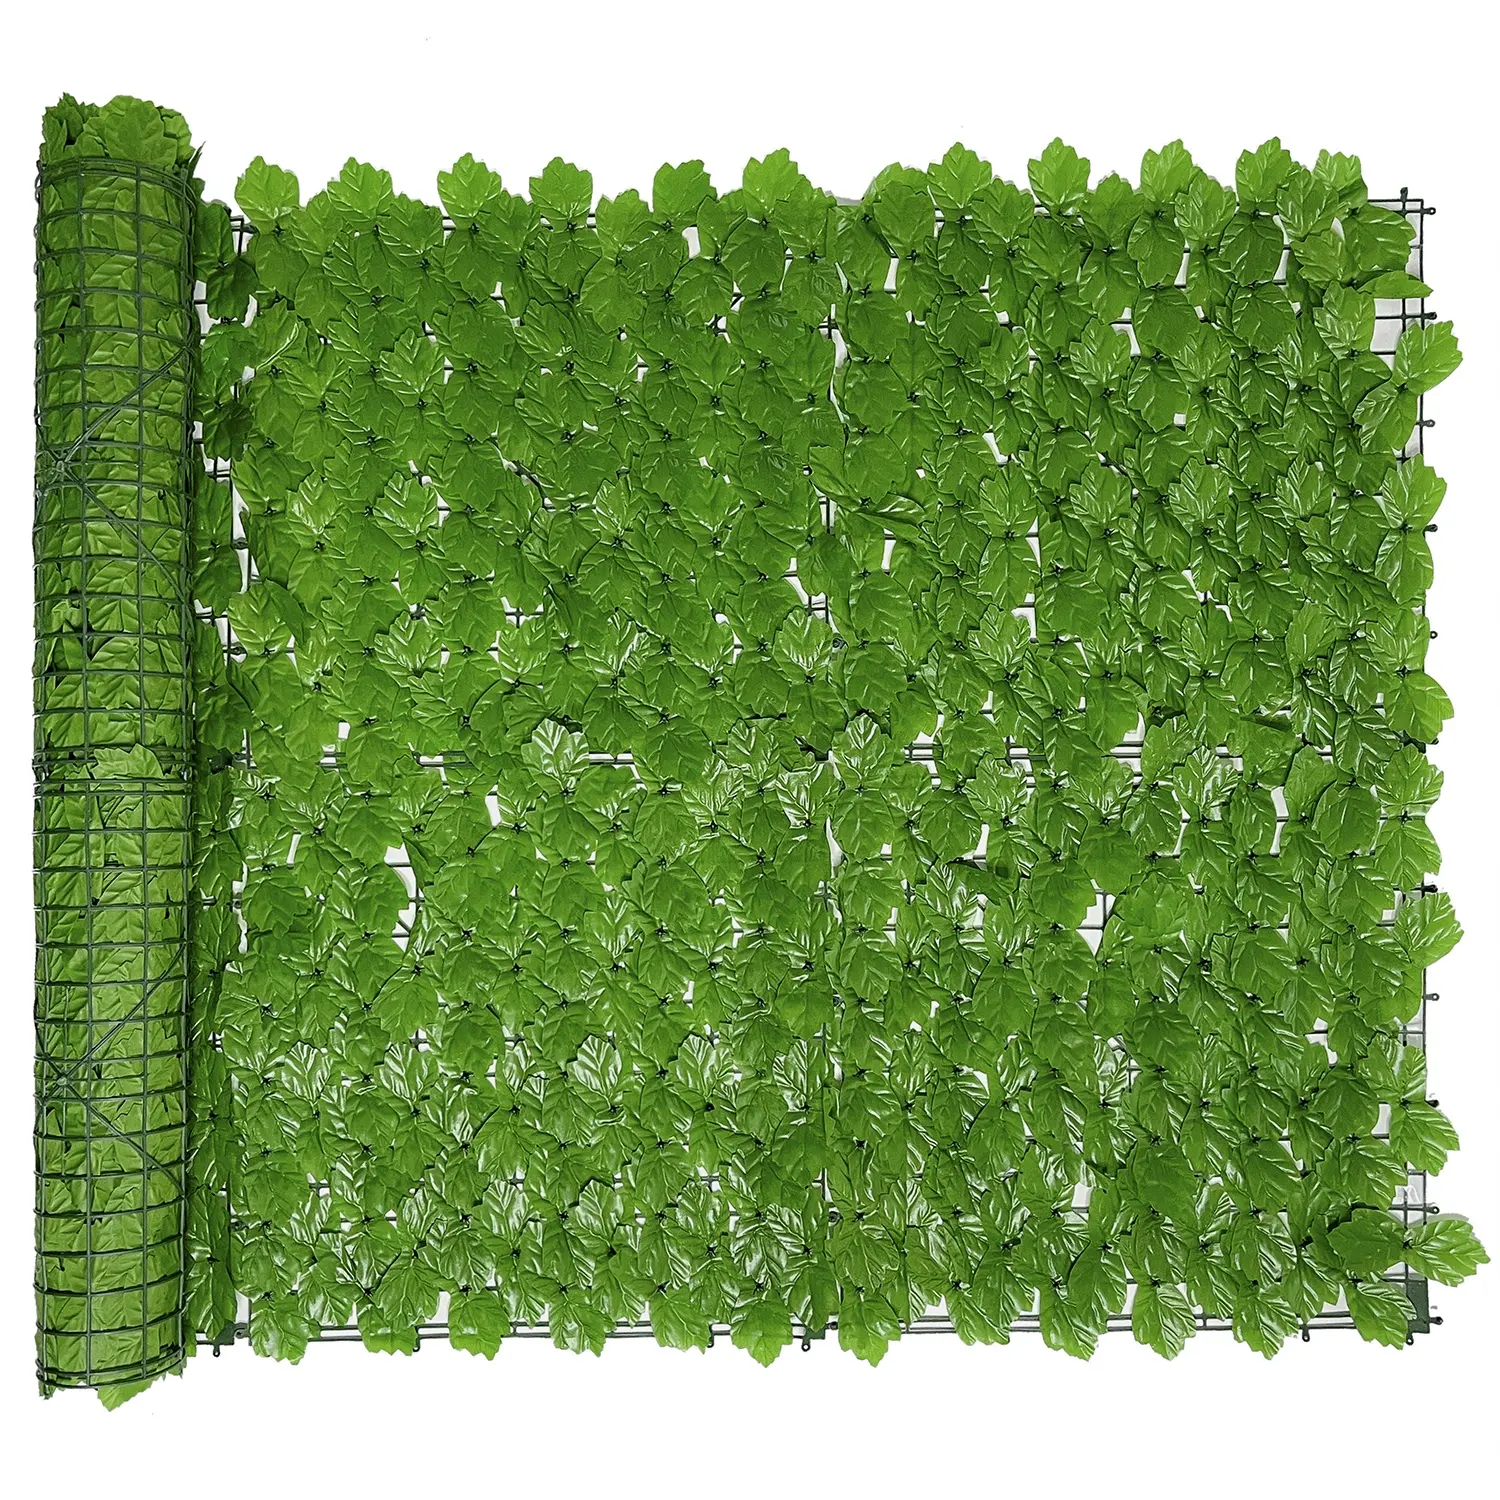 Linwoo personnalisé intimité Faux plastique feuille de vigne vert lierre feuilles écran haie rouleau artificiel vert clair feuille d'érable clôture